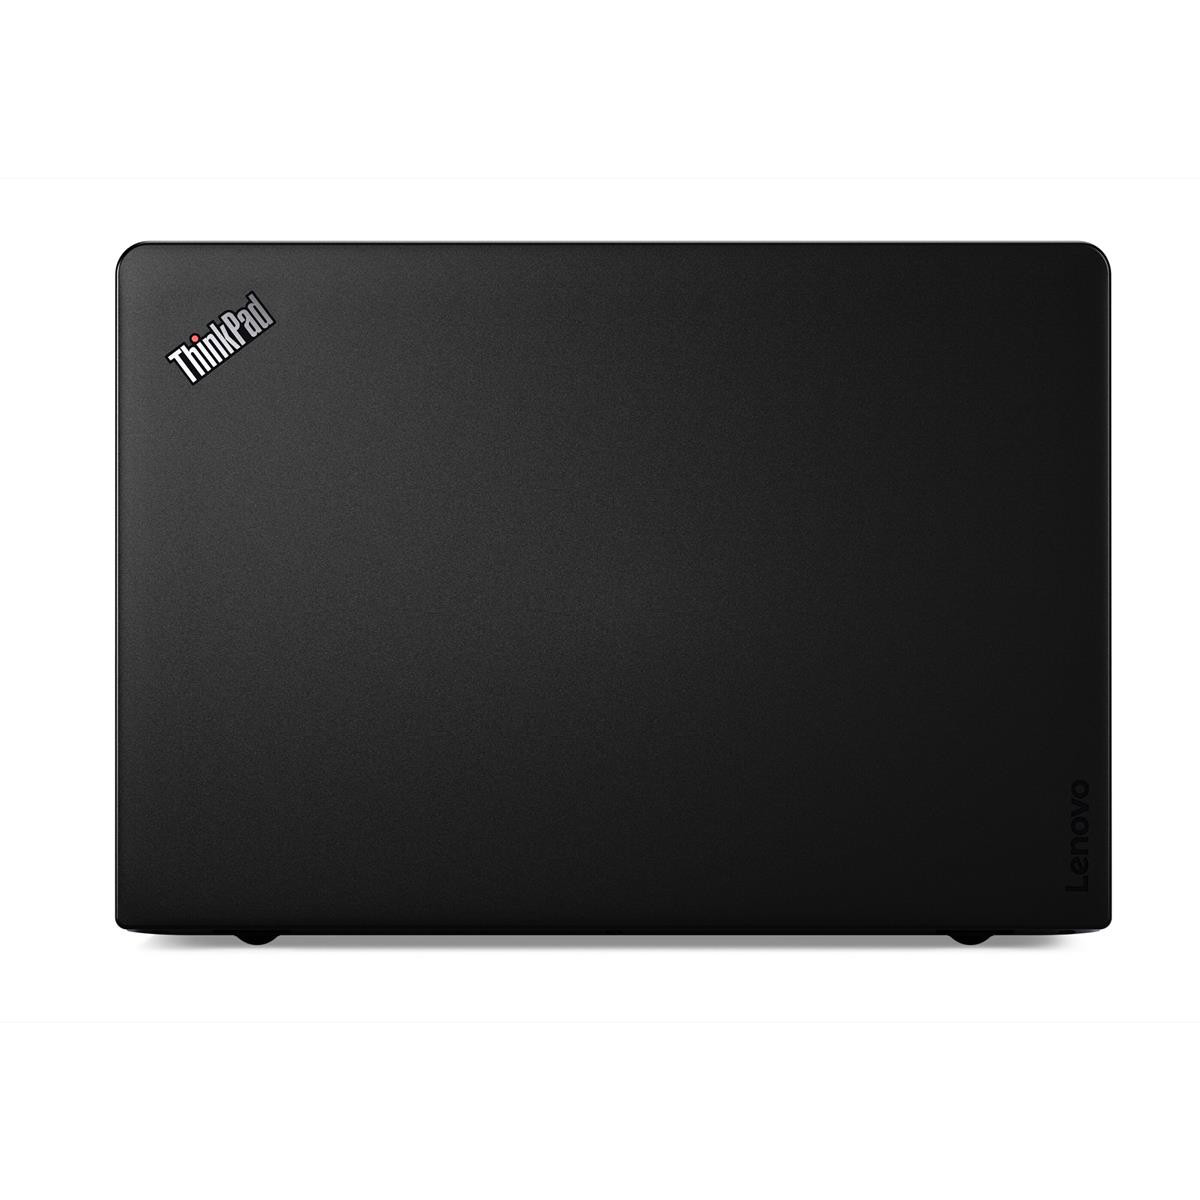 Lenovo ThinkPad 13 G2 Intel Core i3-7100U 4GB RAM 128GB SSD 13.3" HD Win 10 Pro